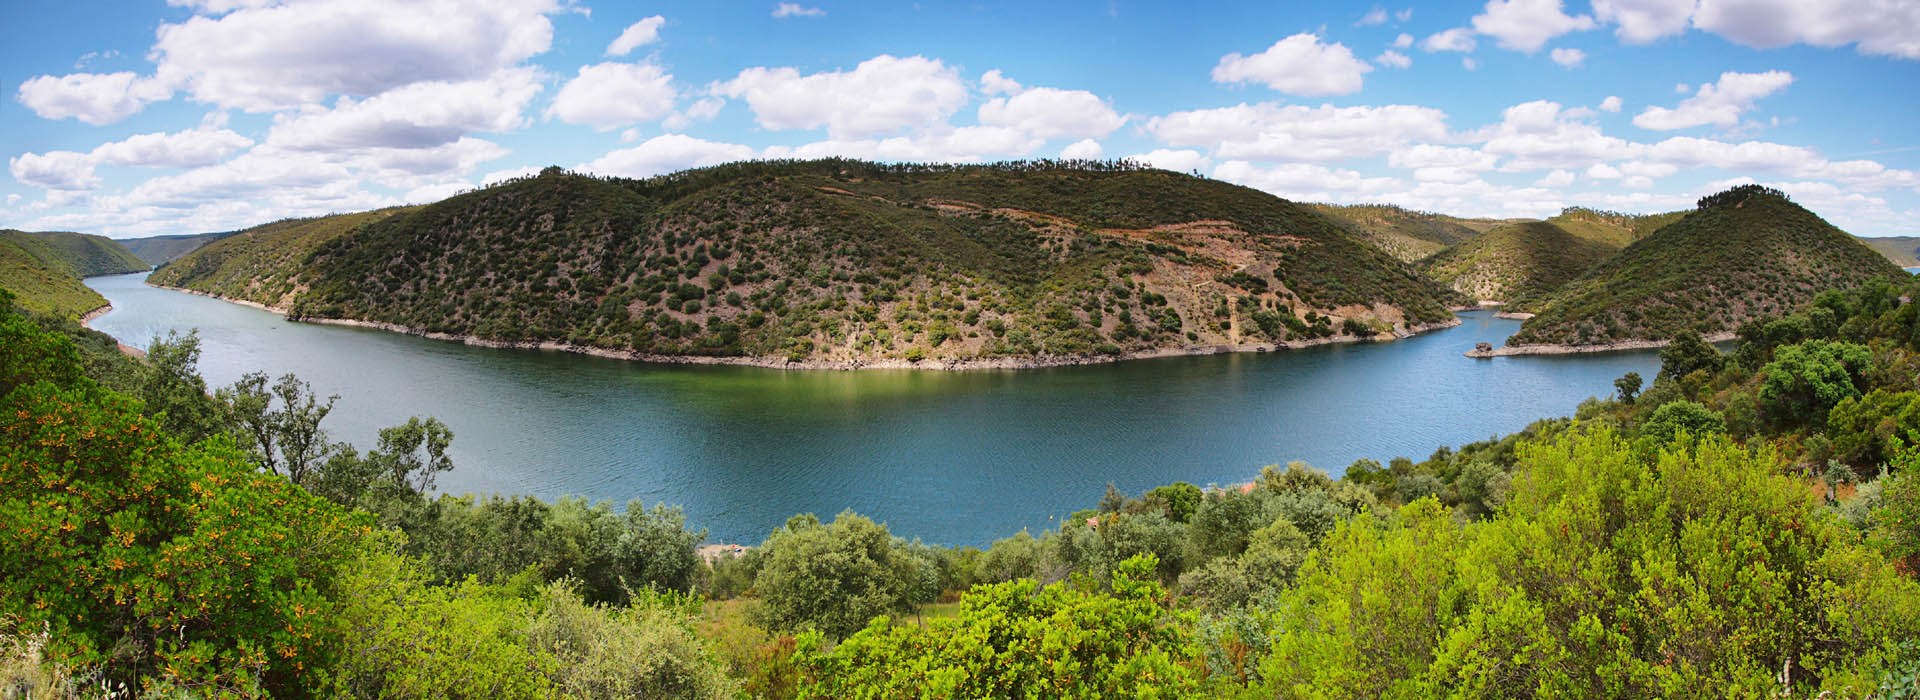 Visiter La Réserve Naturelle du Tage - Portugal